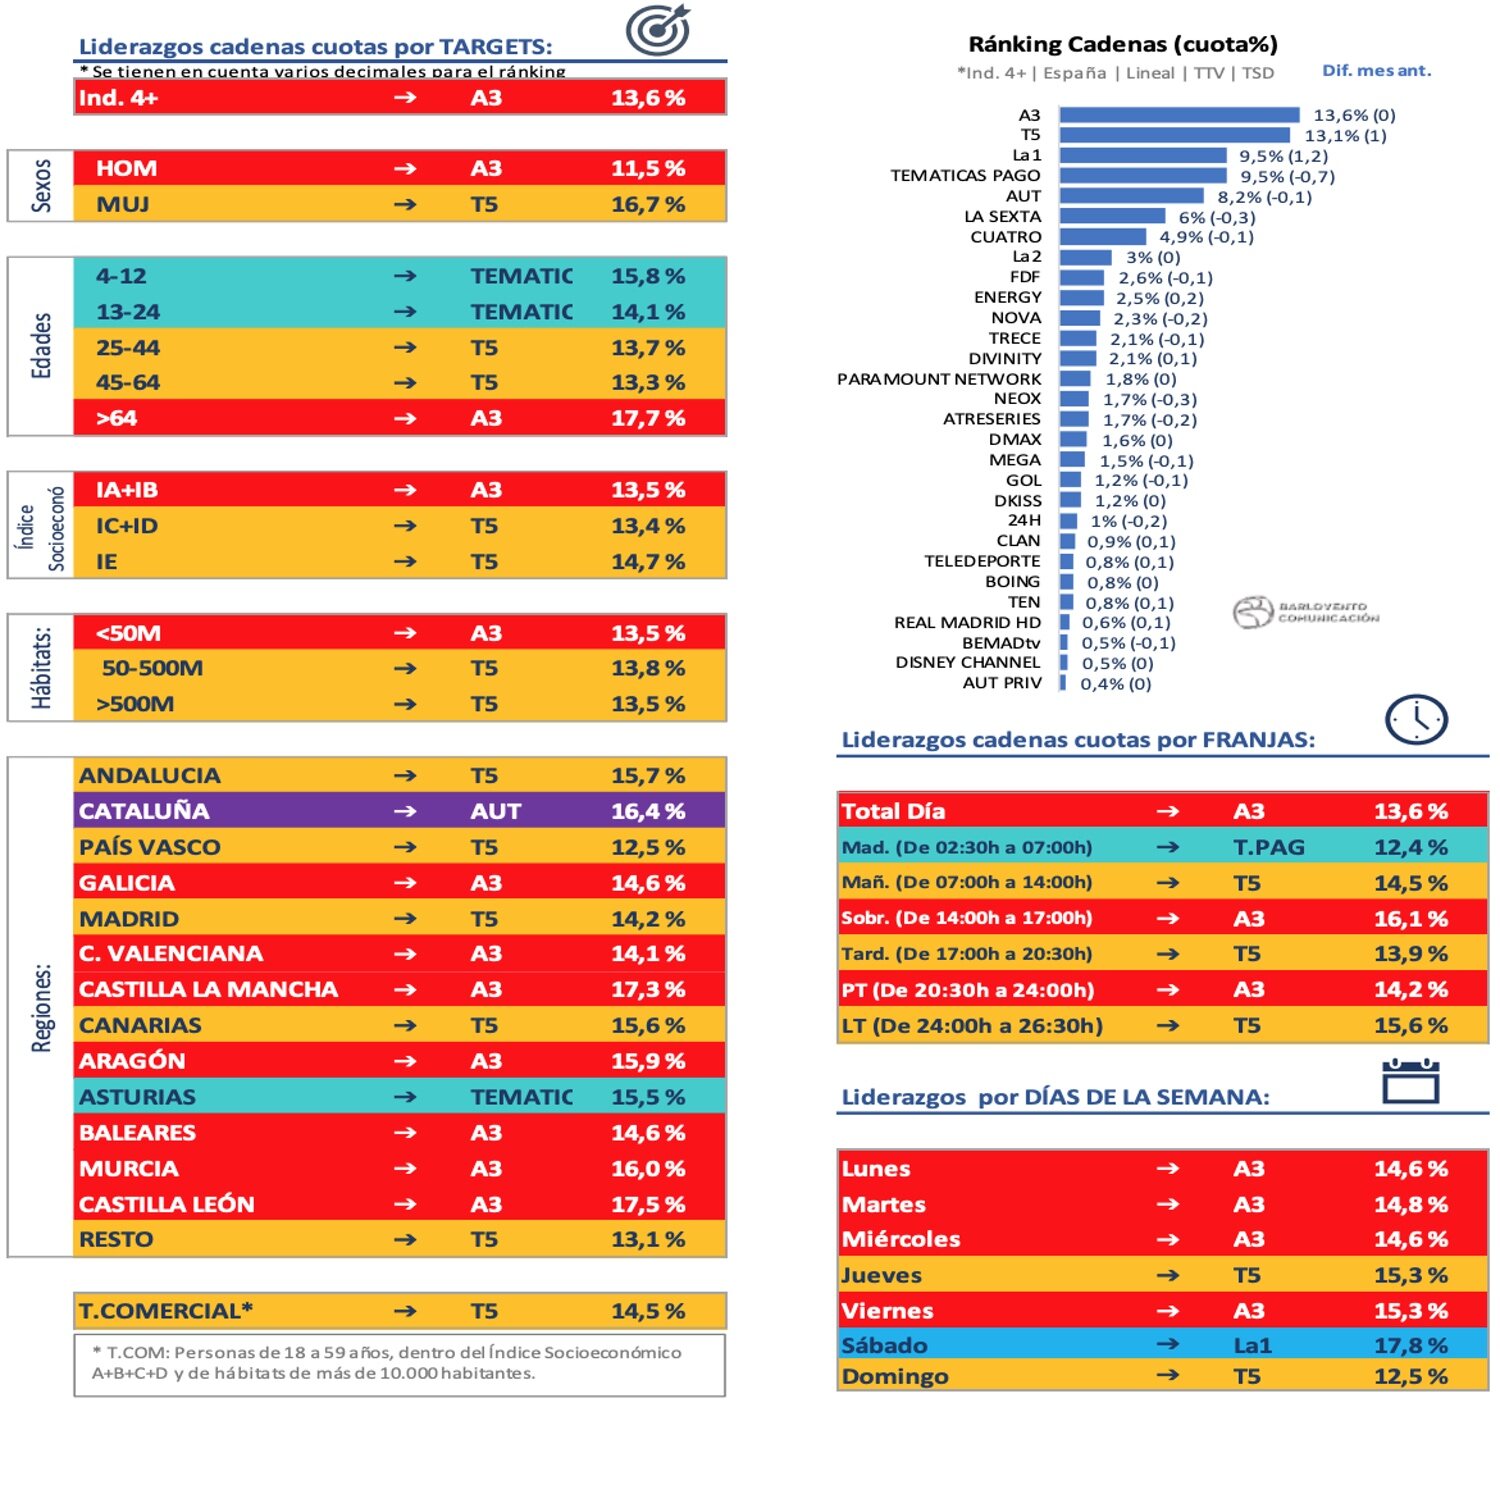 Ranking de cadenas en abierto de cobertura nacional y liderazgos en mayo de 2022